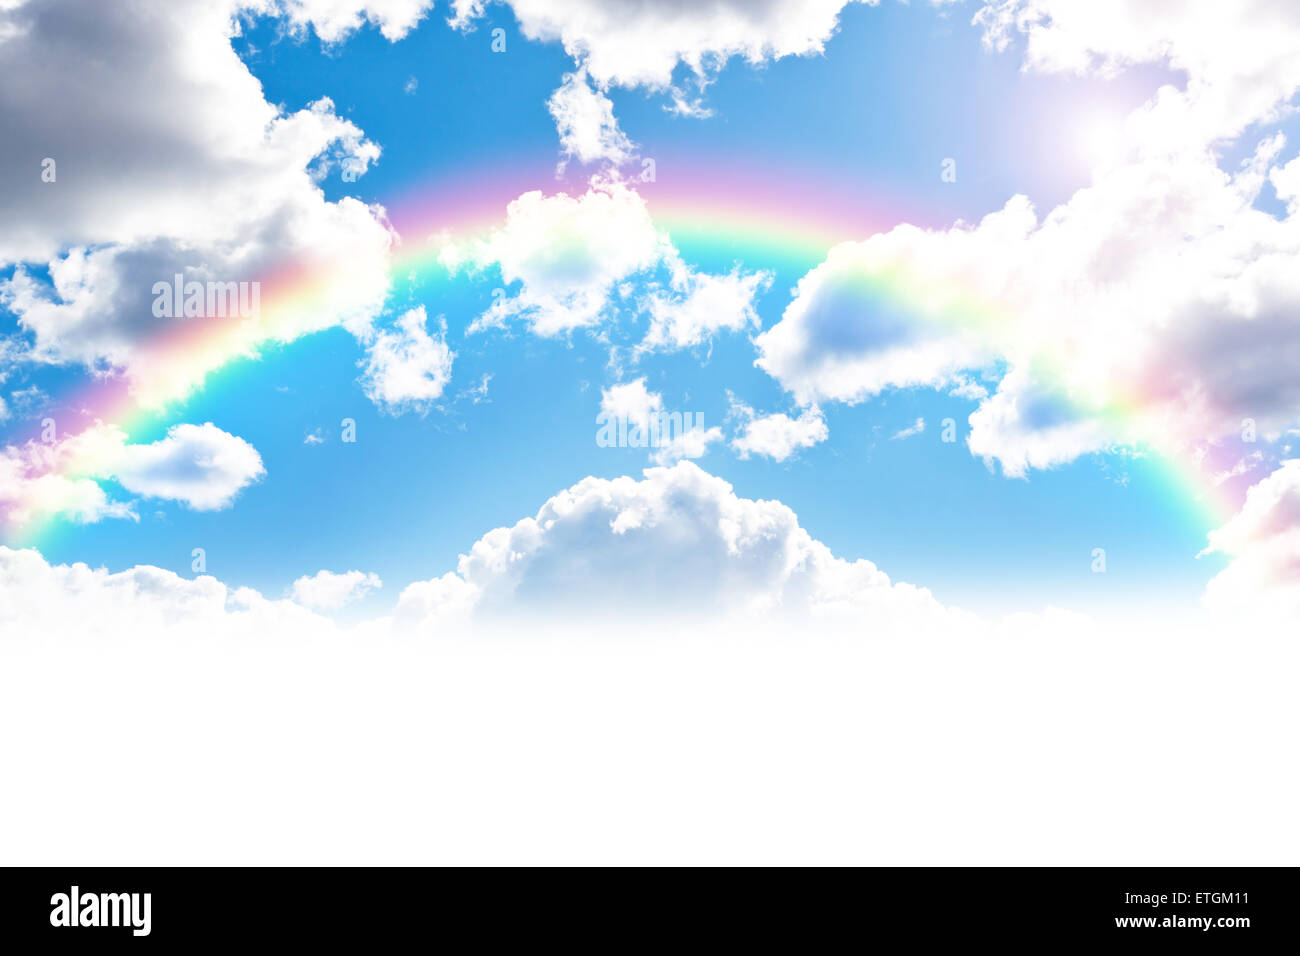 Cloudly Himmelblau Hintergrund mit bunten Regenbogen Stockfoto